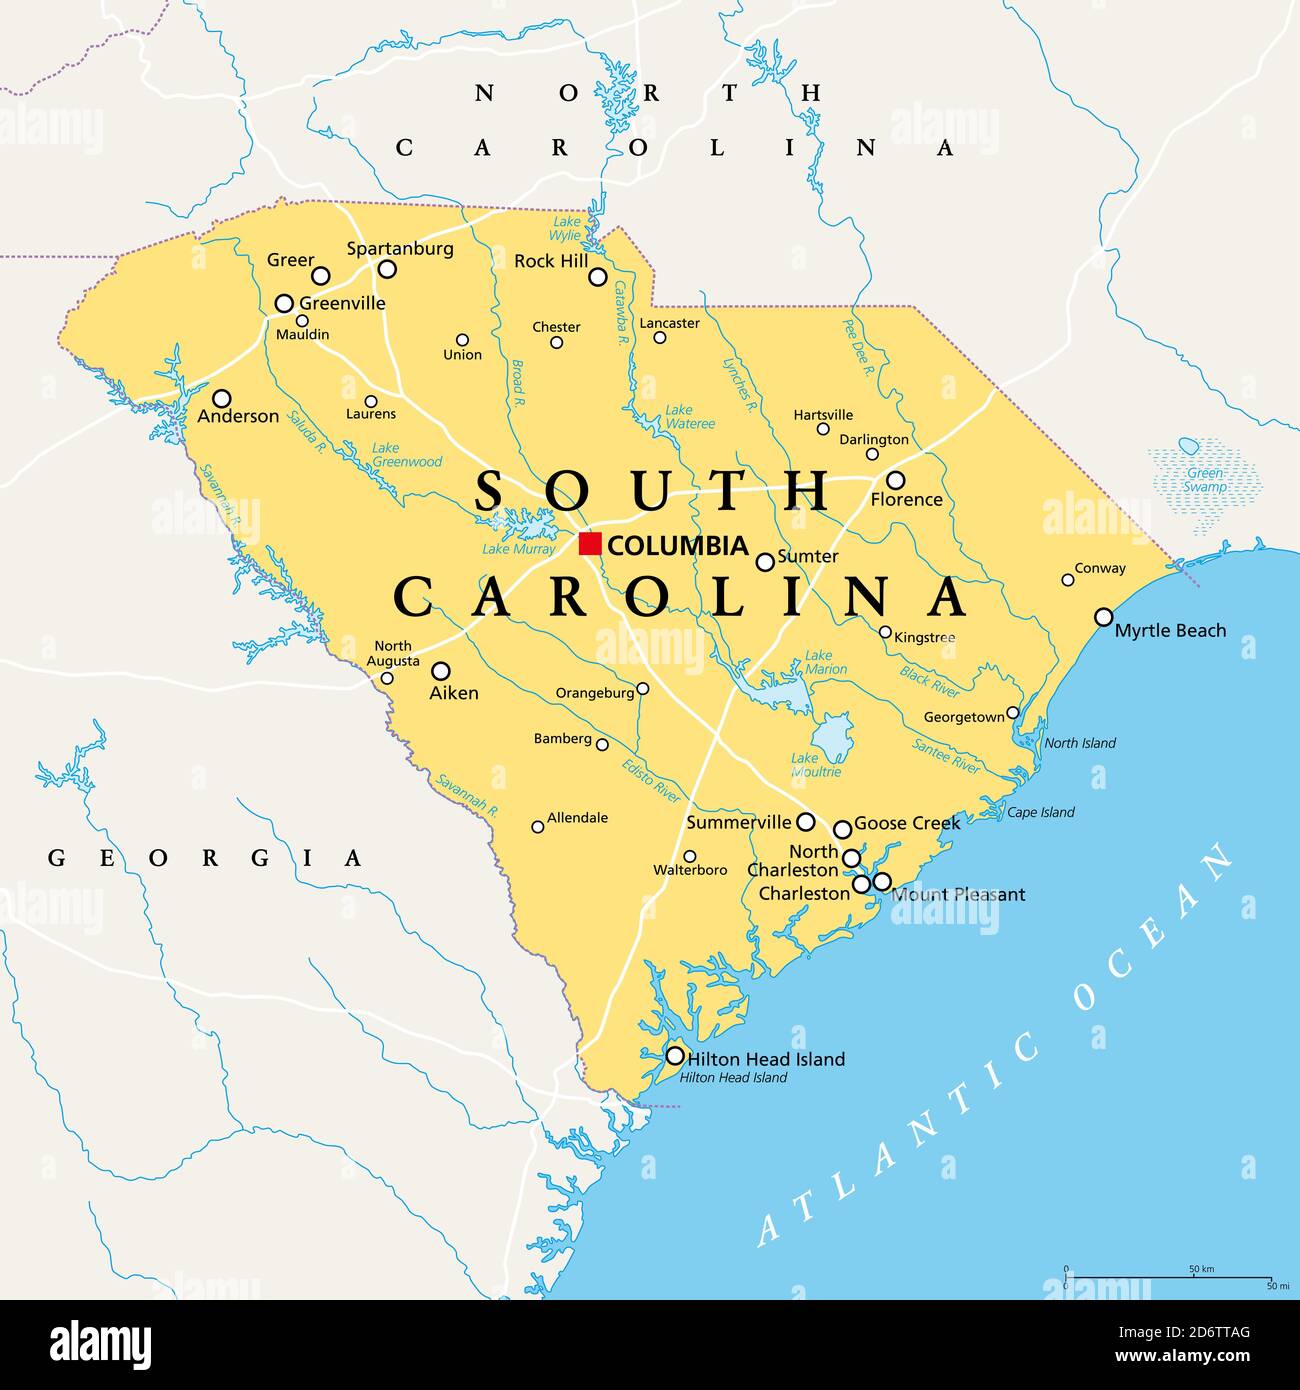 South Carolina, SC, mappa politica, con la capitale Columbia, le città più grandi e i confini. Stato nella regione sud-orientale degli Stati Uniti. Foto Stock